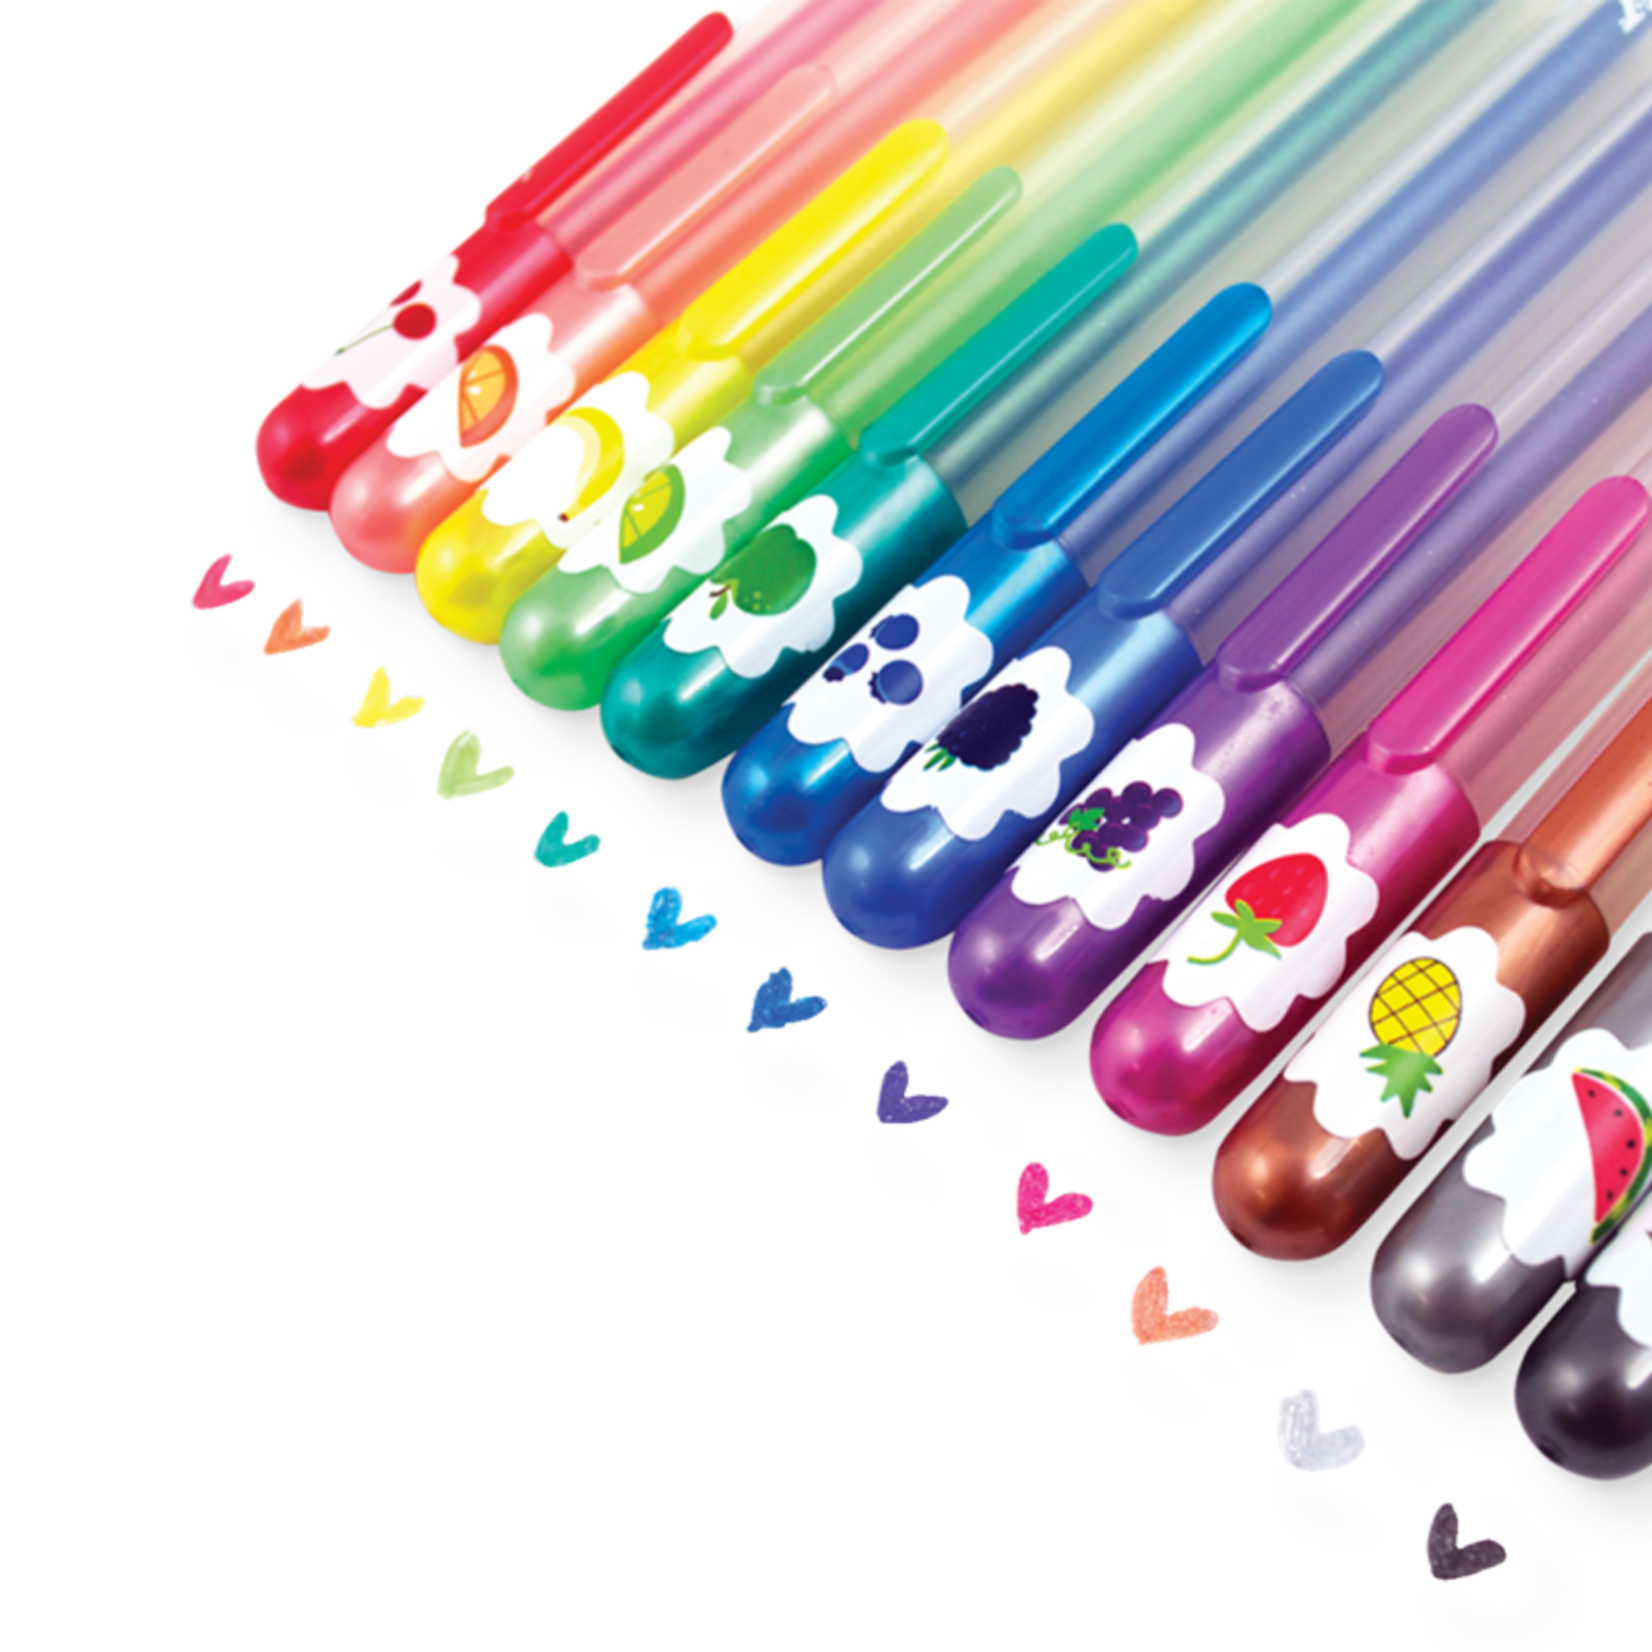 Color Sheen Metallic Gel Pens | Set of 12